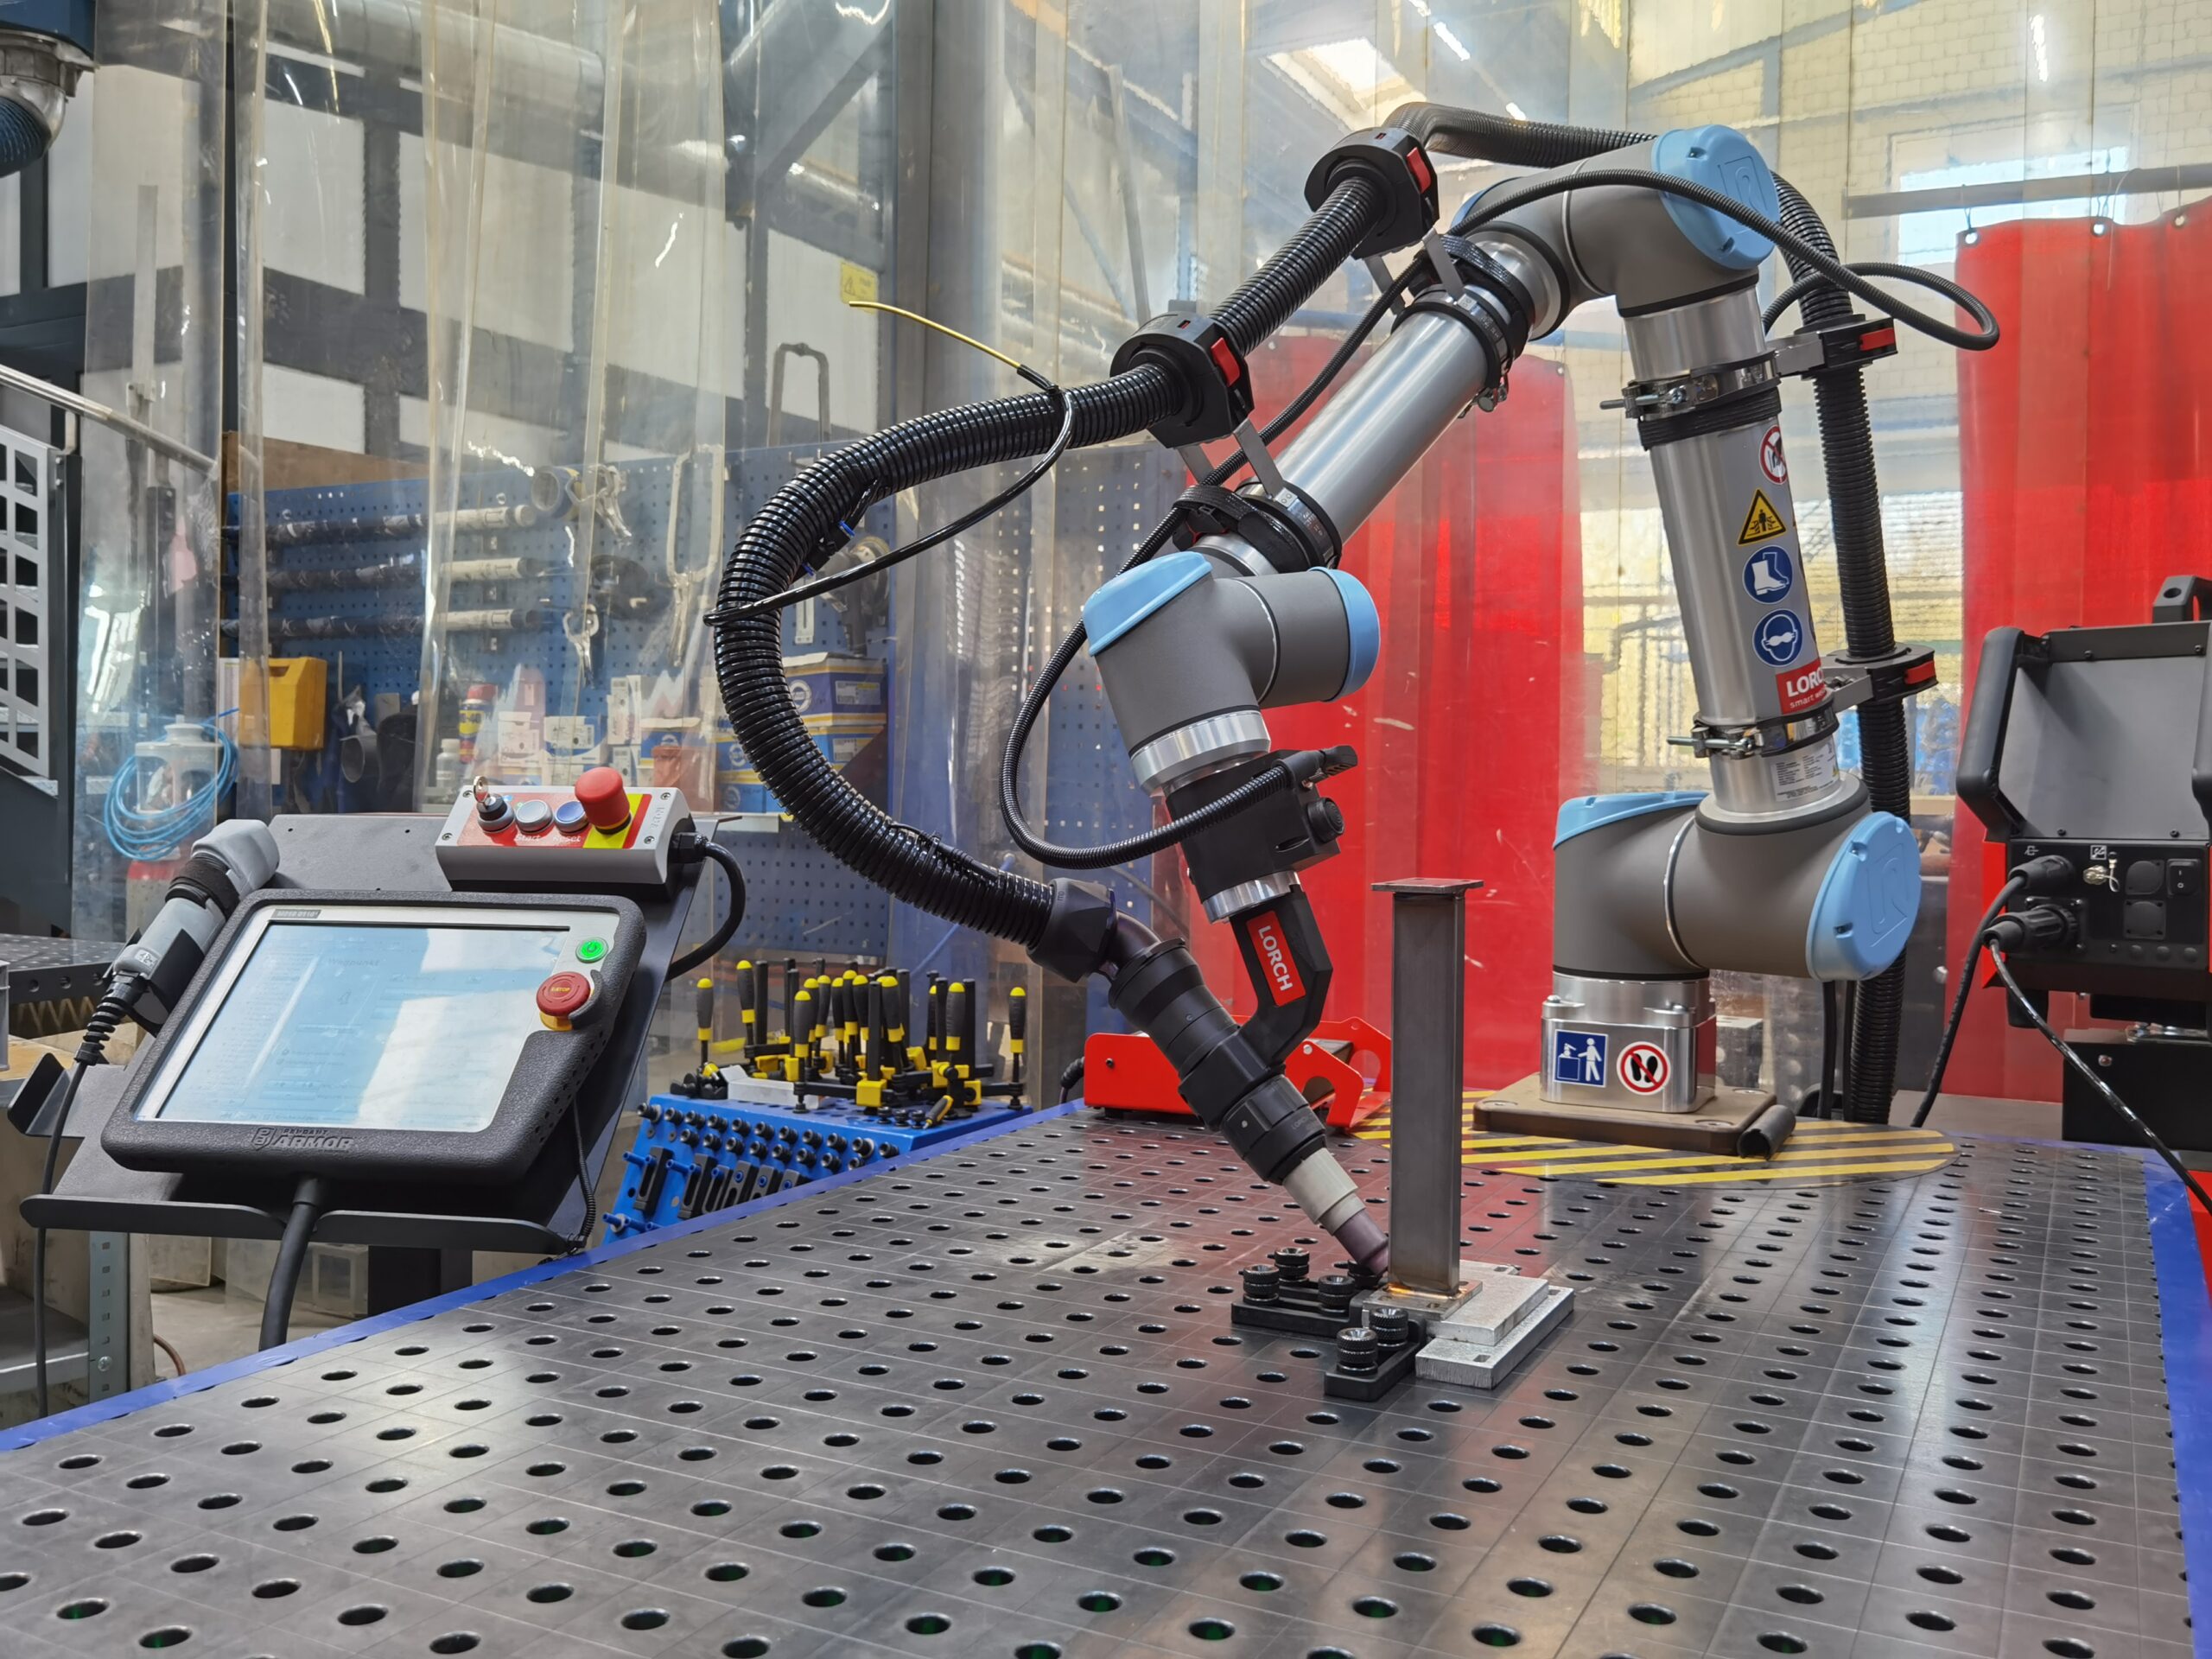 zwei neue Cobot-Roboterschweiss Arbeitsplätze